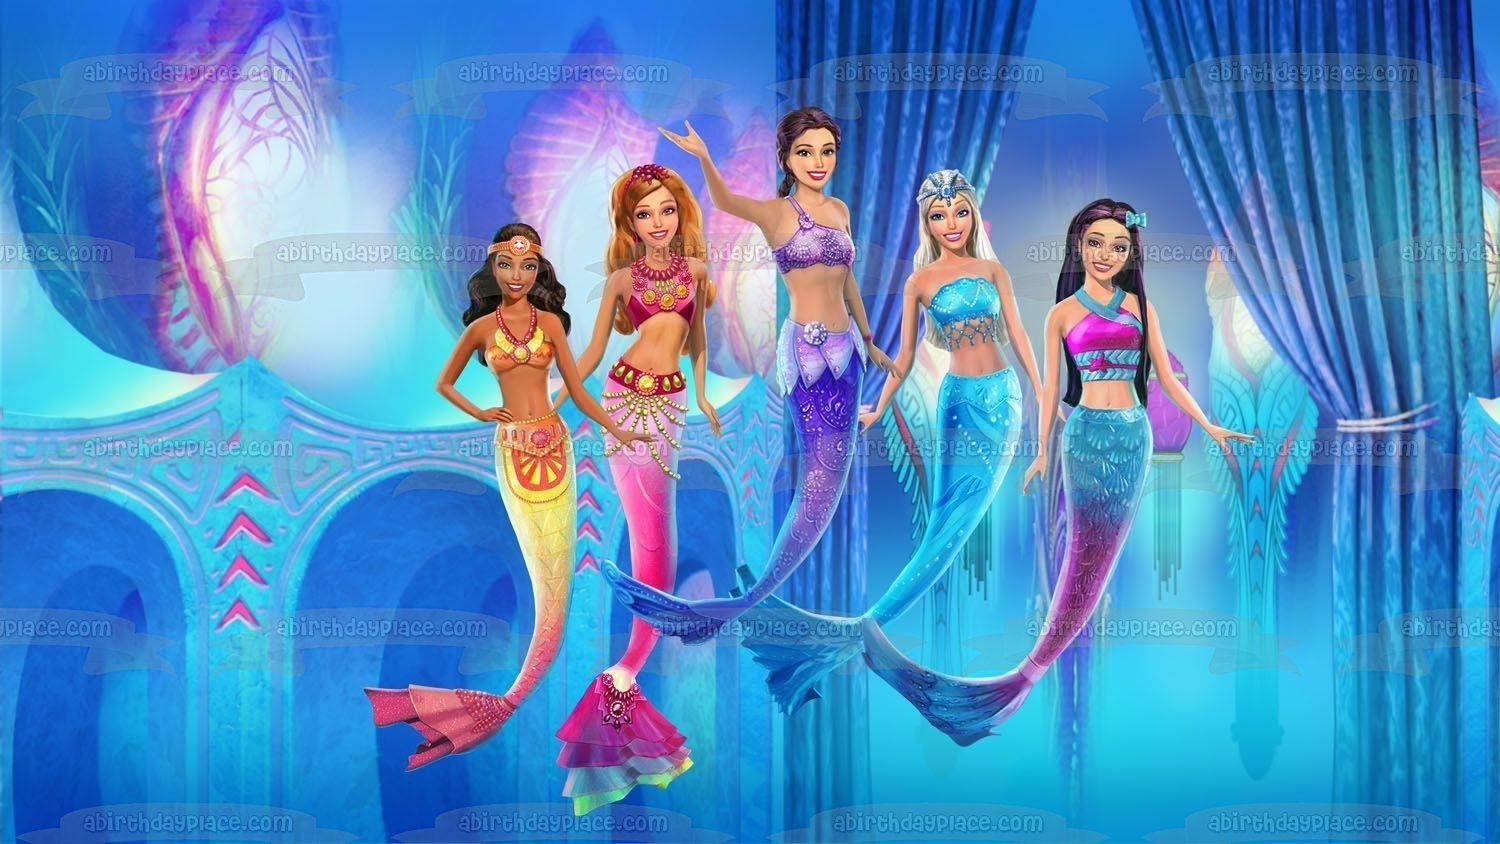 Mattel Barbie Dolls Mermaids Edible Cake Topper Image ABPID05094. Mermaid barbie, Barbie in a mermaid tale, Barbie movies